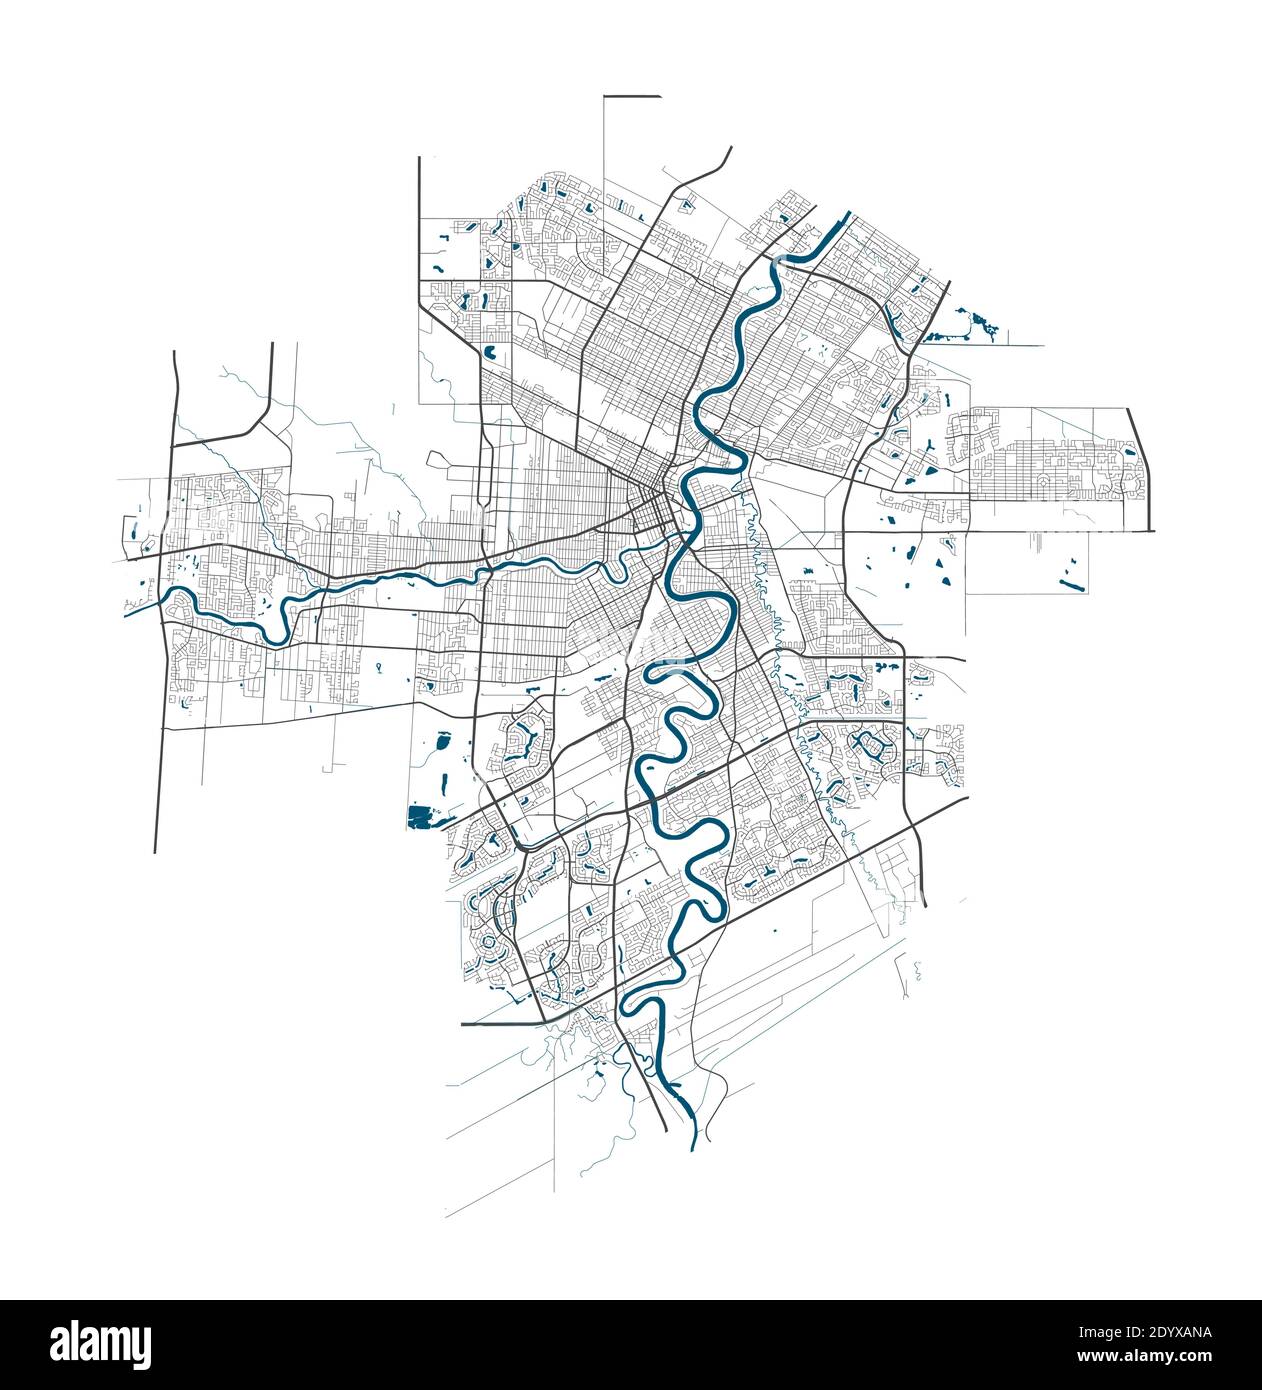 Carte de Winnipeg. Carte détaillée de la zone administrative de Winnipeg. Panorama urbain. Illustration vectorielle libre de droits. Carte de contour linéaire avec autoroute Illustration de Vecteur